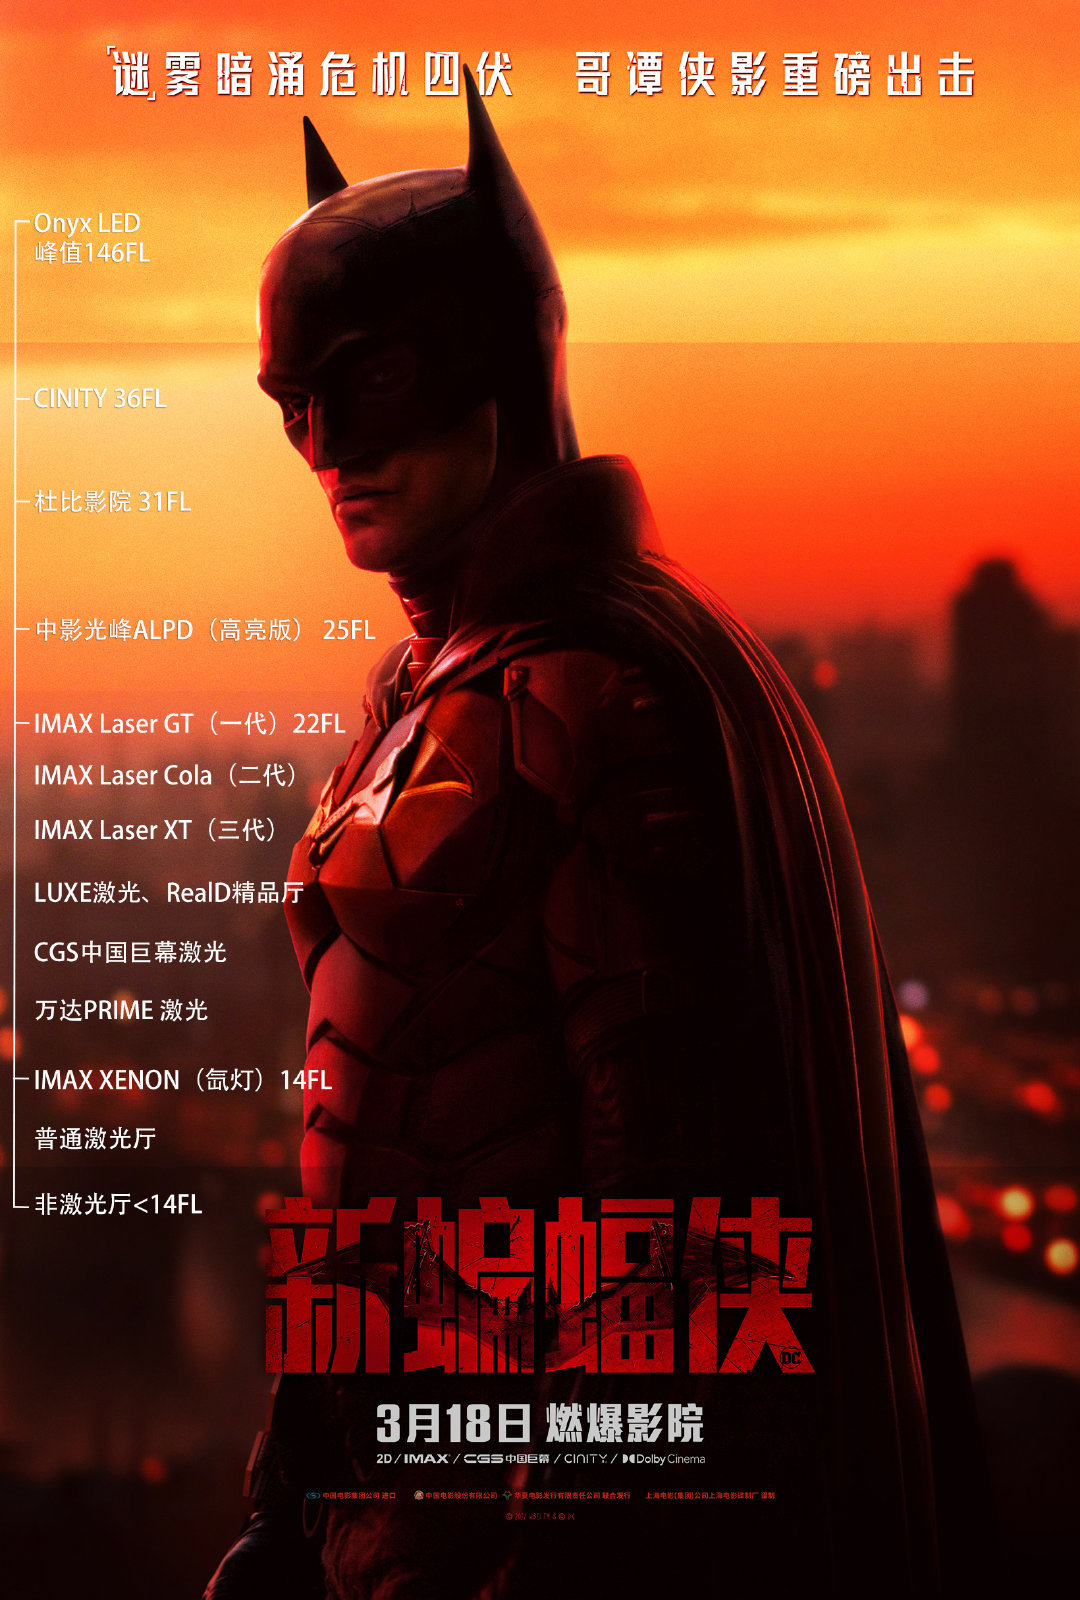 《新蝙蝠侠》导演马特·里夫斯建议影院放映亮度不低于14FL